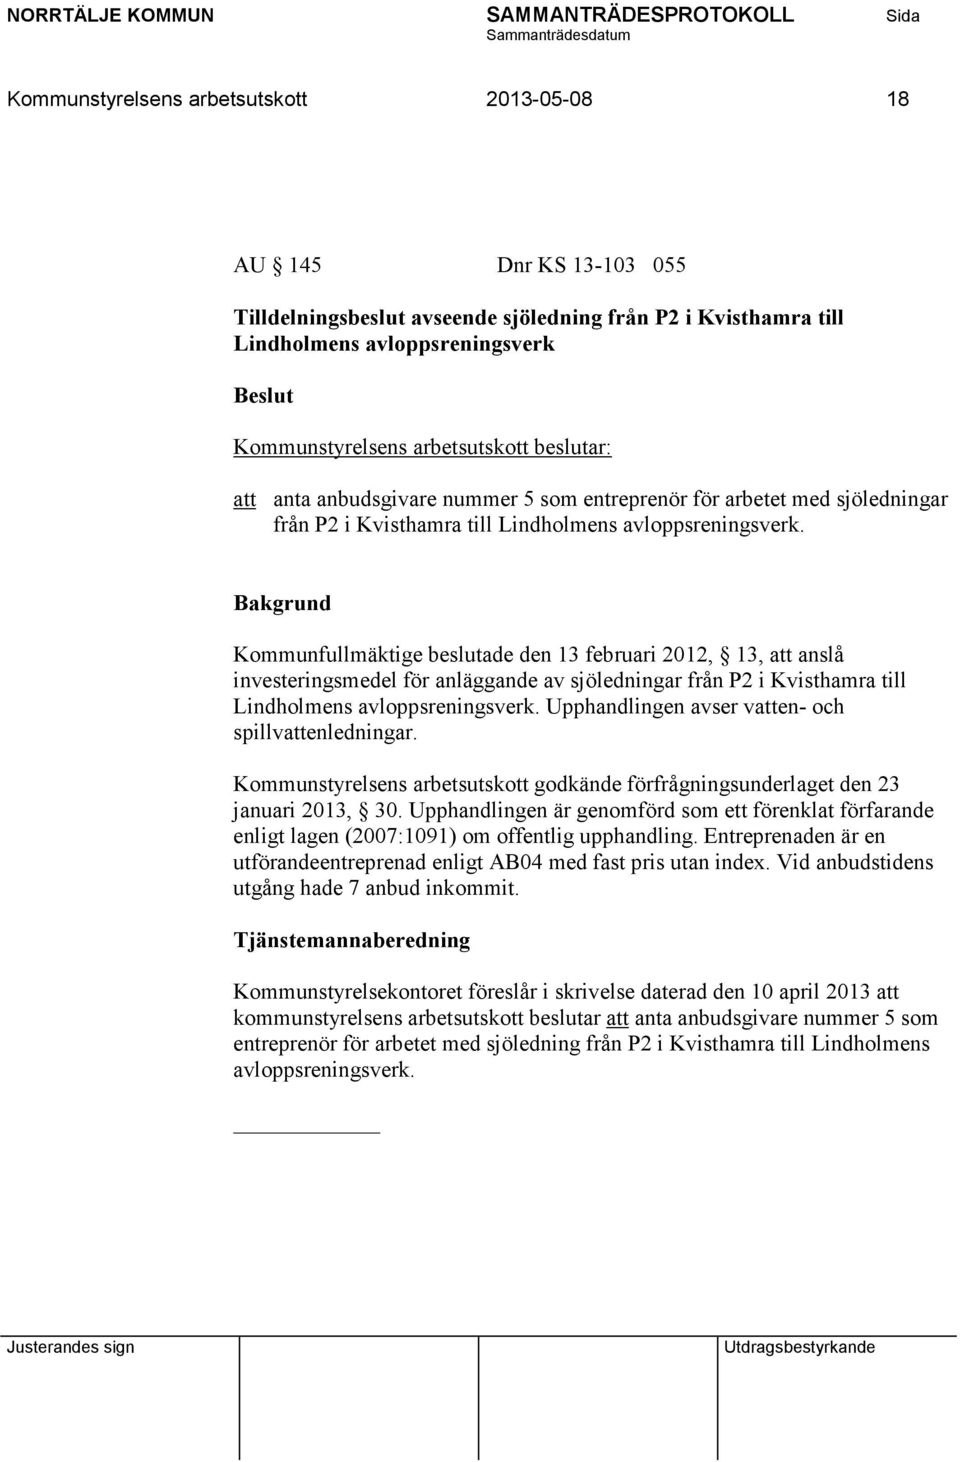 Kommunfullmäktige beslutade den 13 februari 2012, 13, att anslå investeringsmedel för anläggande av sjöledningar från P2 i Kvisthamra till Lindholmens avloppsreningsverk.